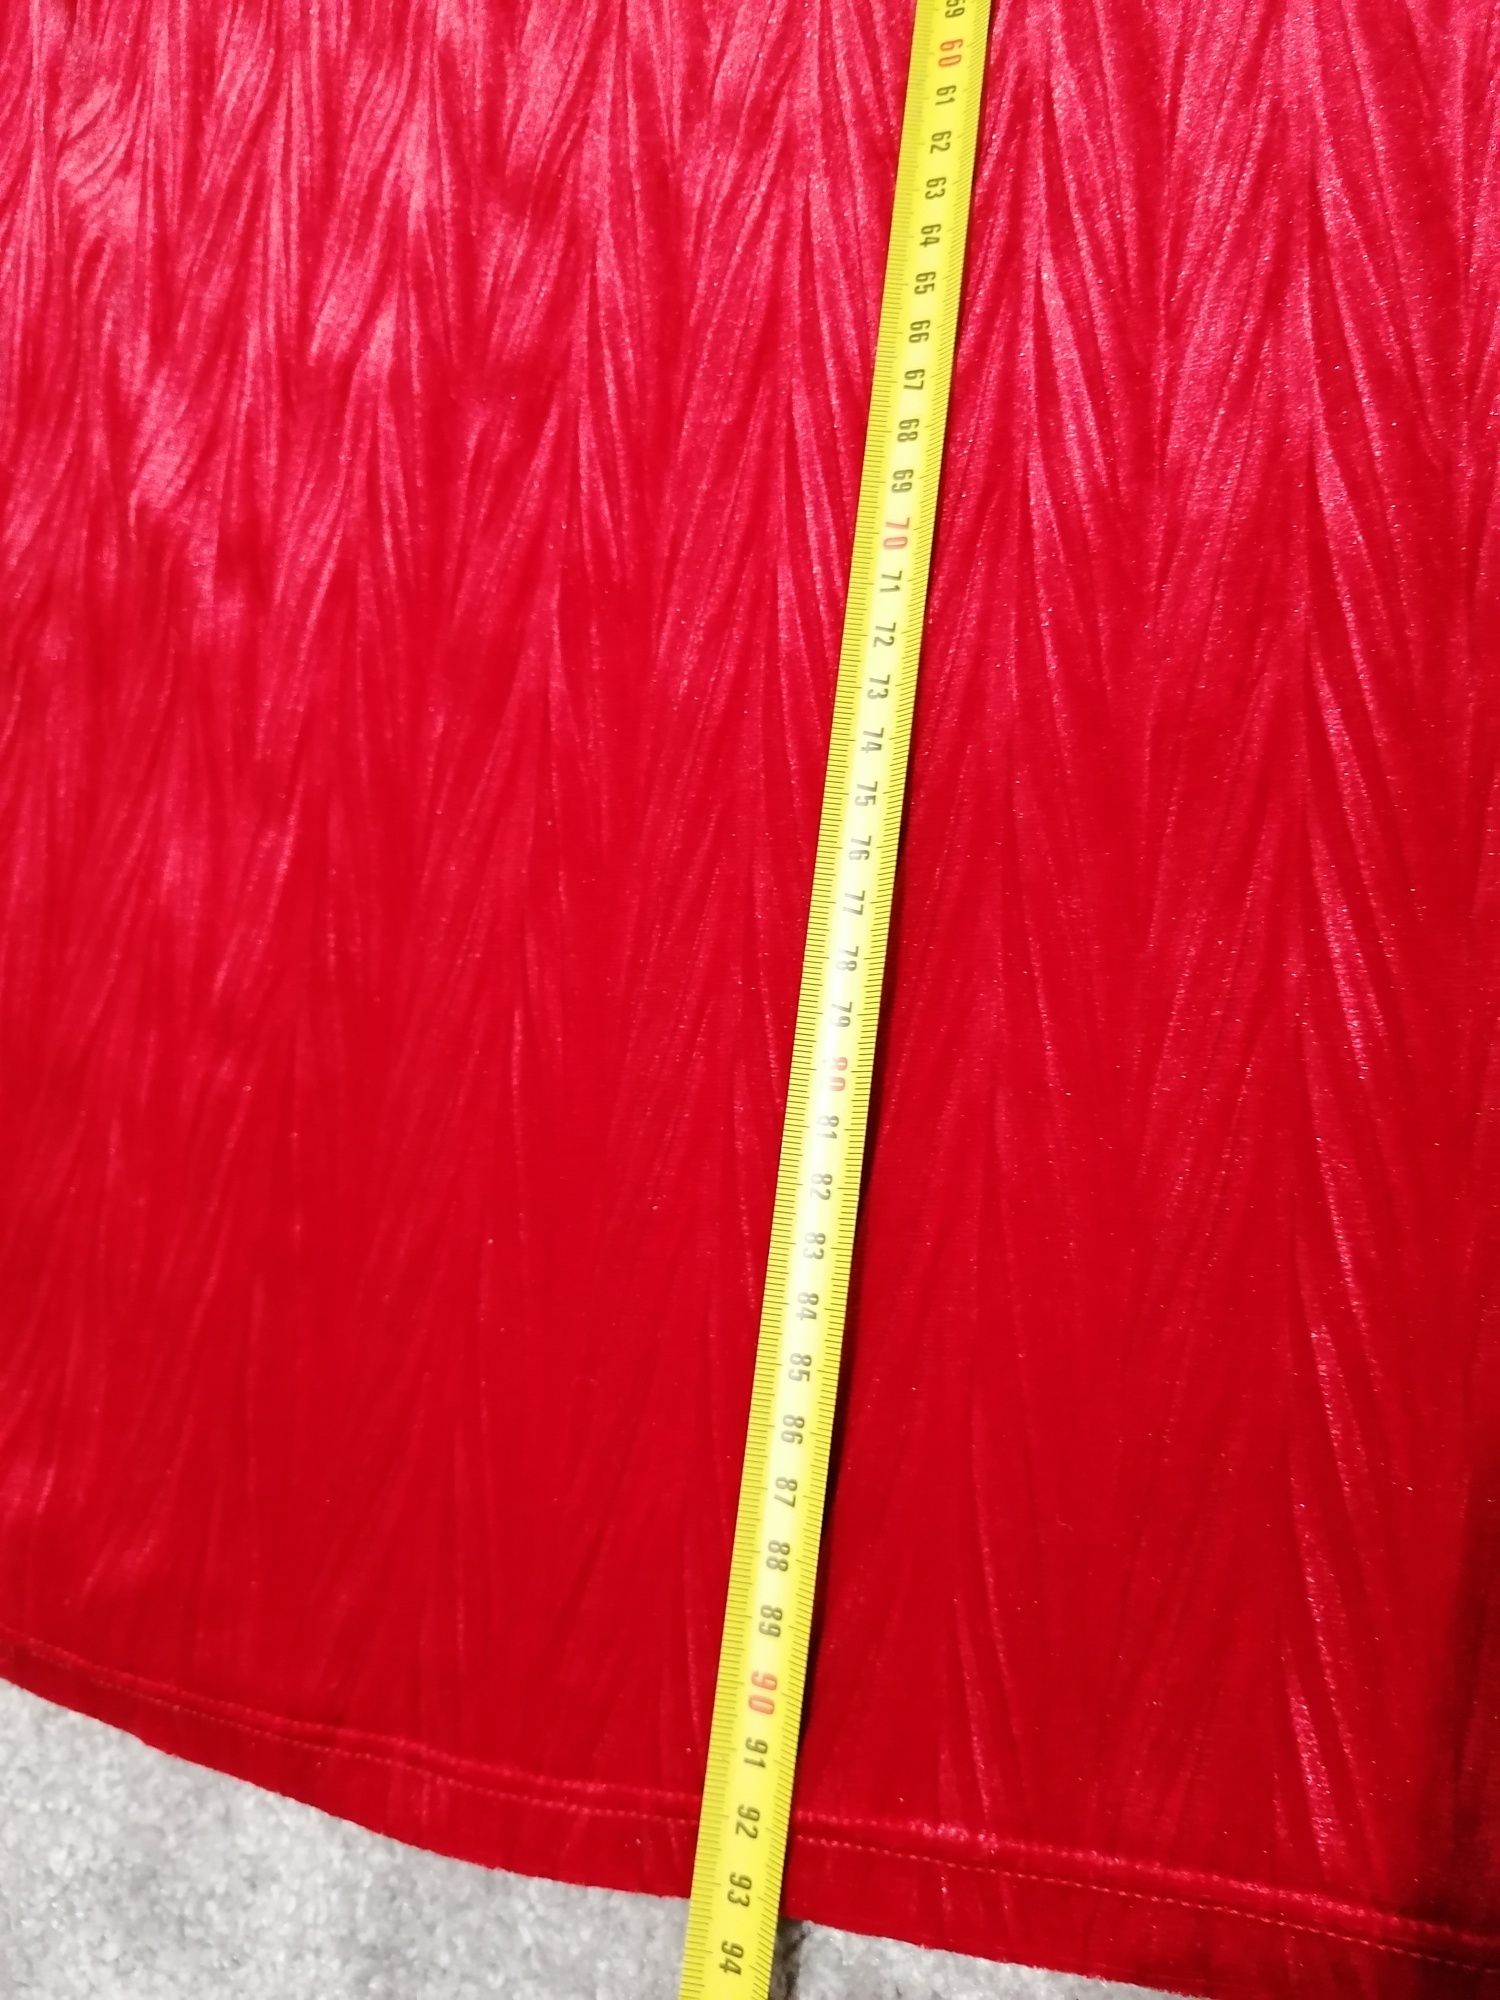 Czerwona welurowa sukienka rozmiar uniwersalny brak paska